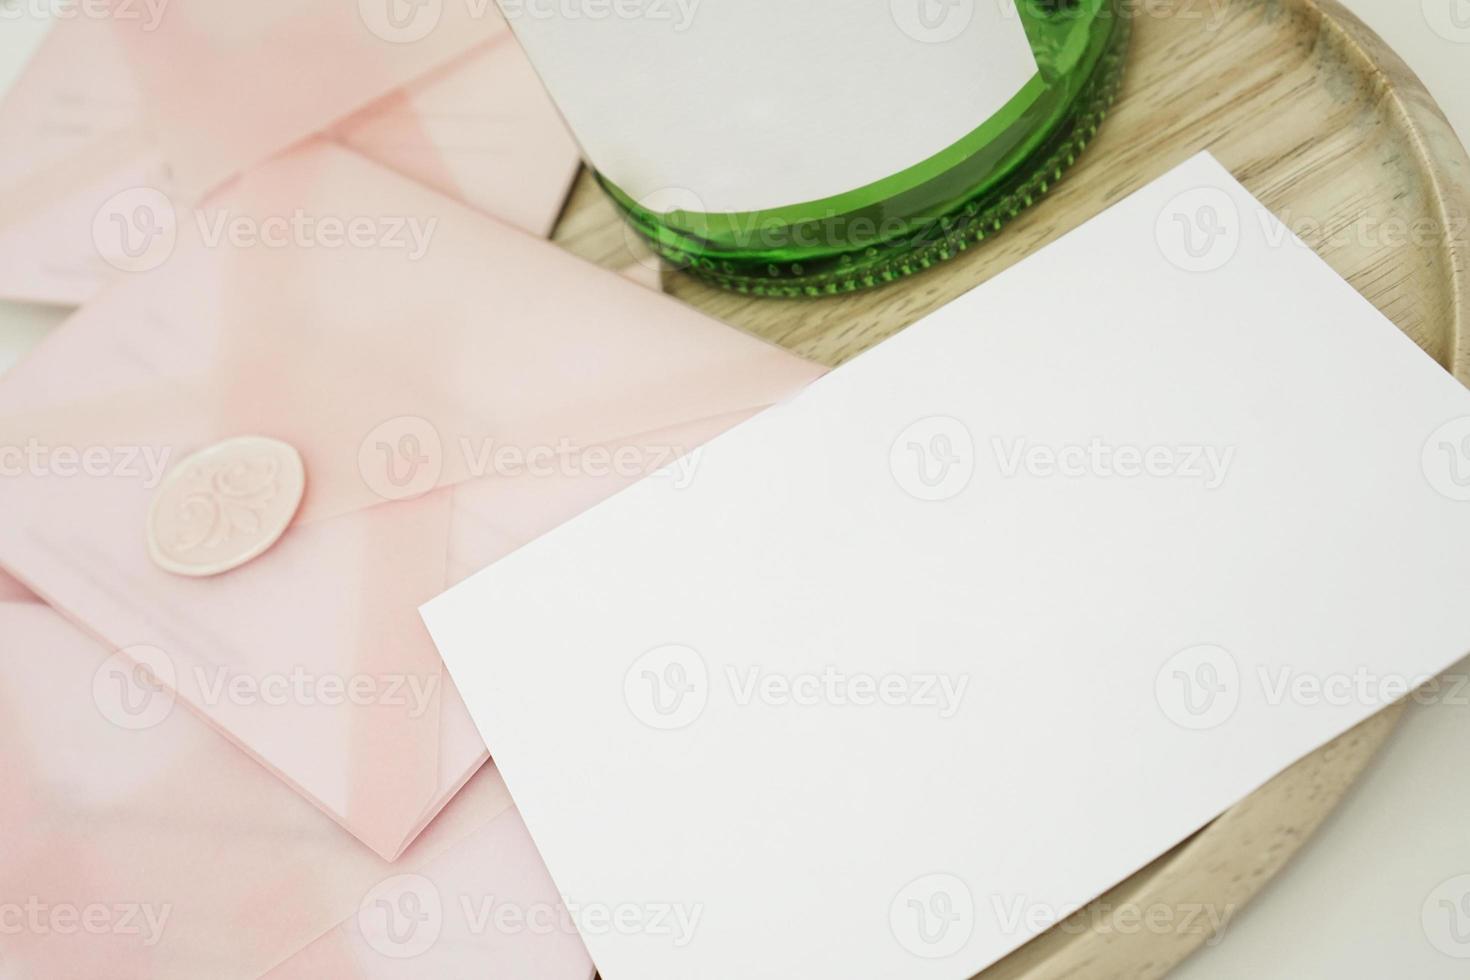 chèques-cadeaux dans une enveloppe rose. invitation de mariage photo